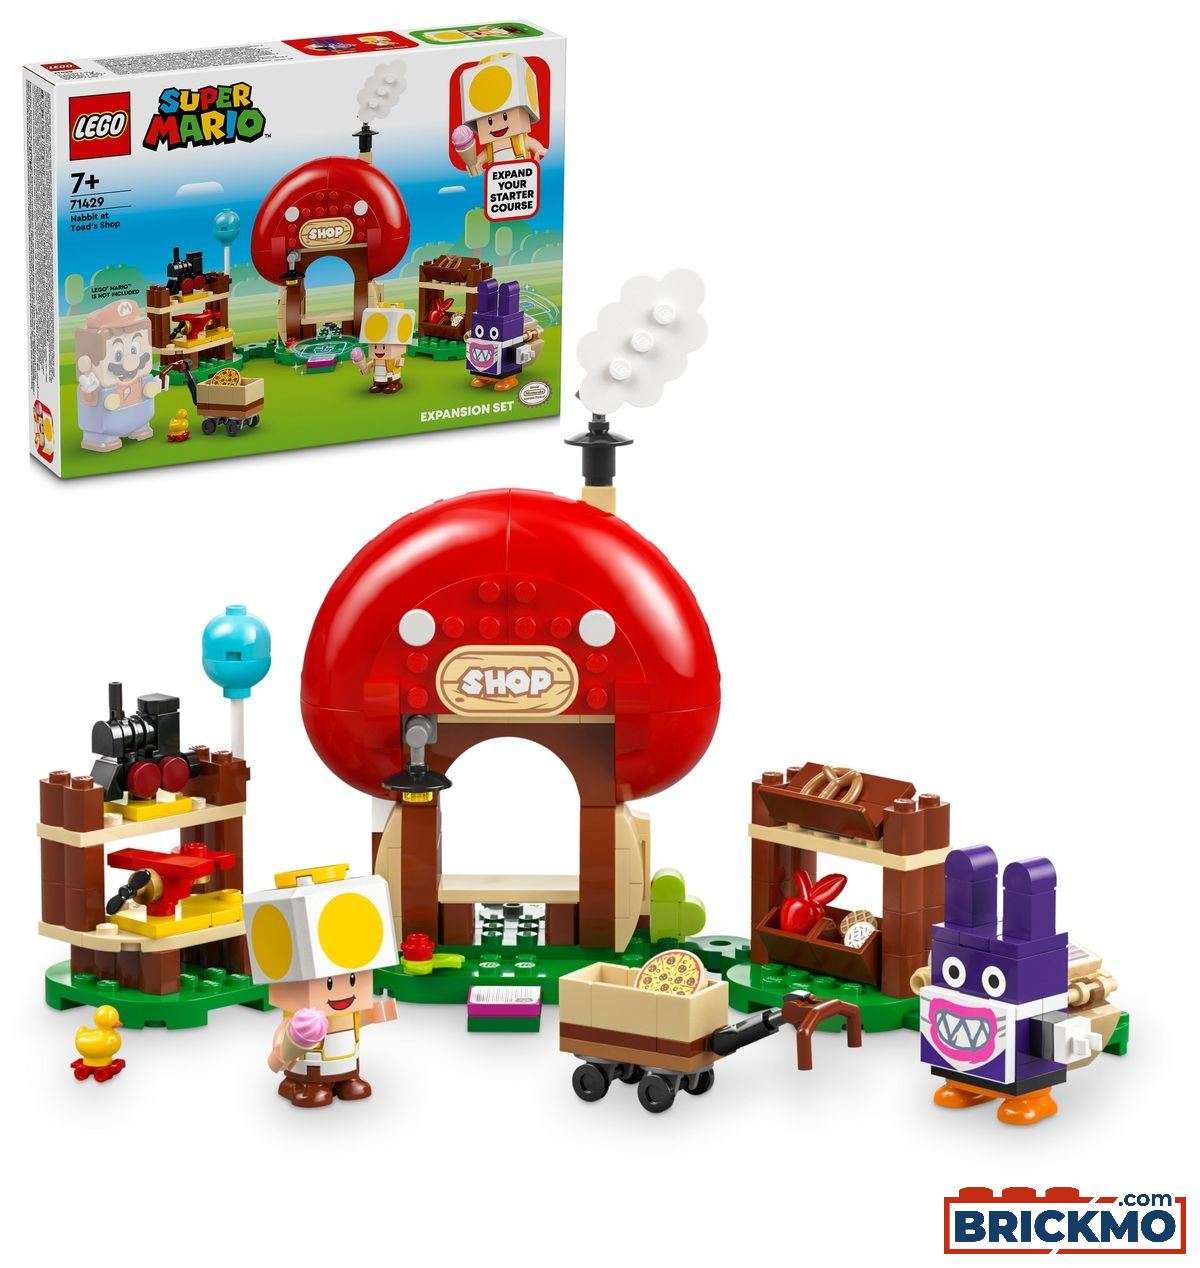 LEGO Super Mario 71429 Nabbit at Toads Shop 71429